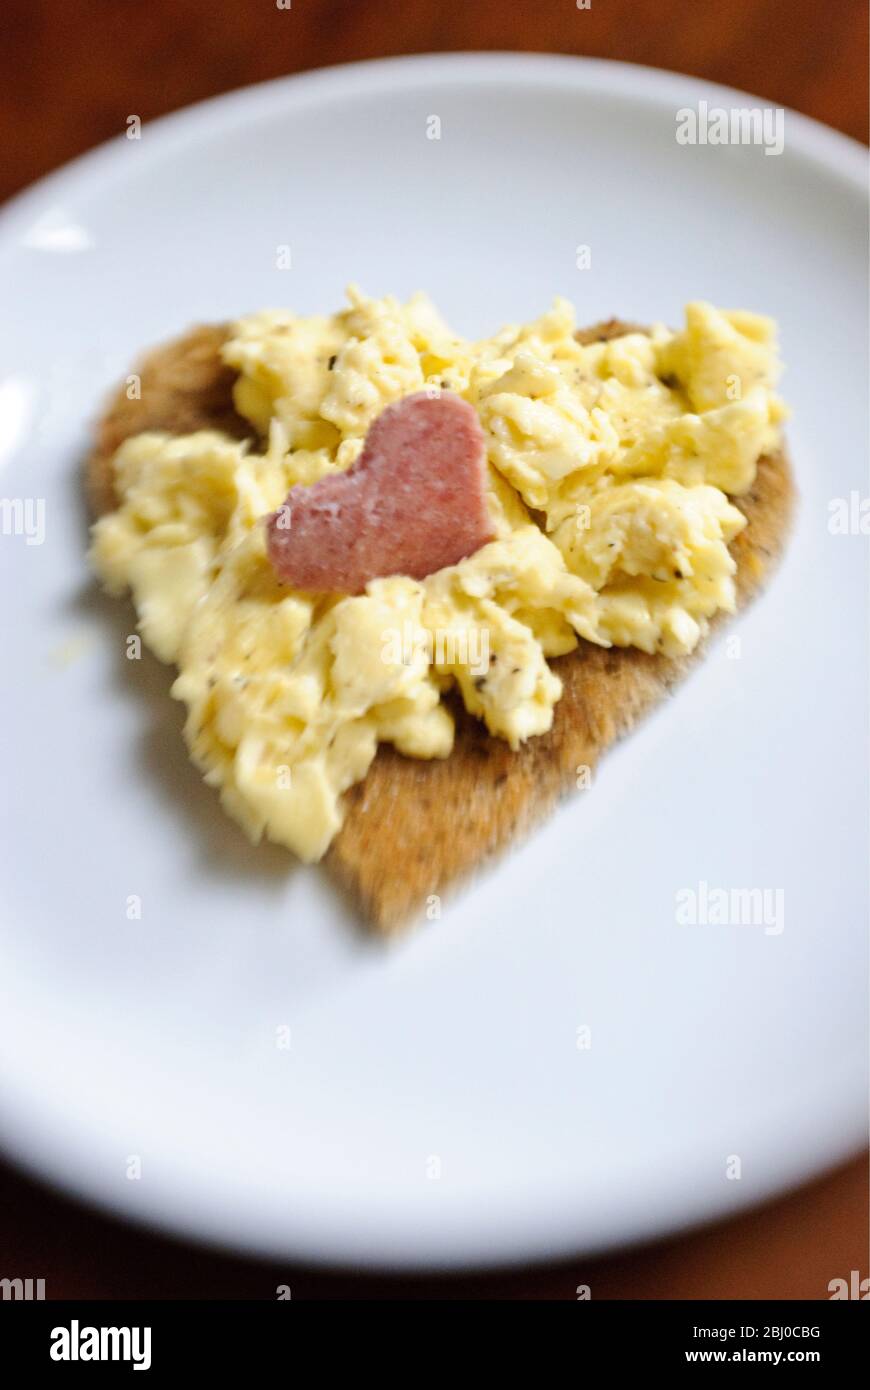 Saint-Valentin petit déjeuner d'œufs brouillés sur pain grillé en forme de coeur avec tranche de salami coupée en forme de coeur - Banque D'Images